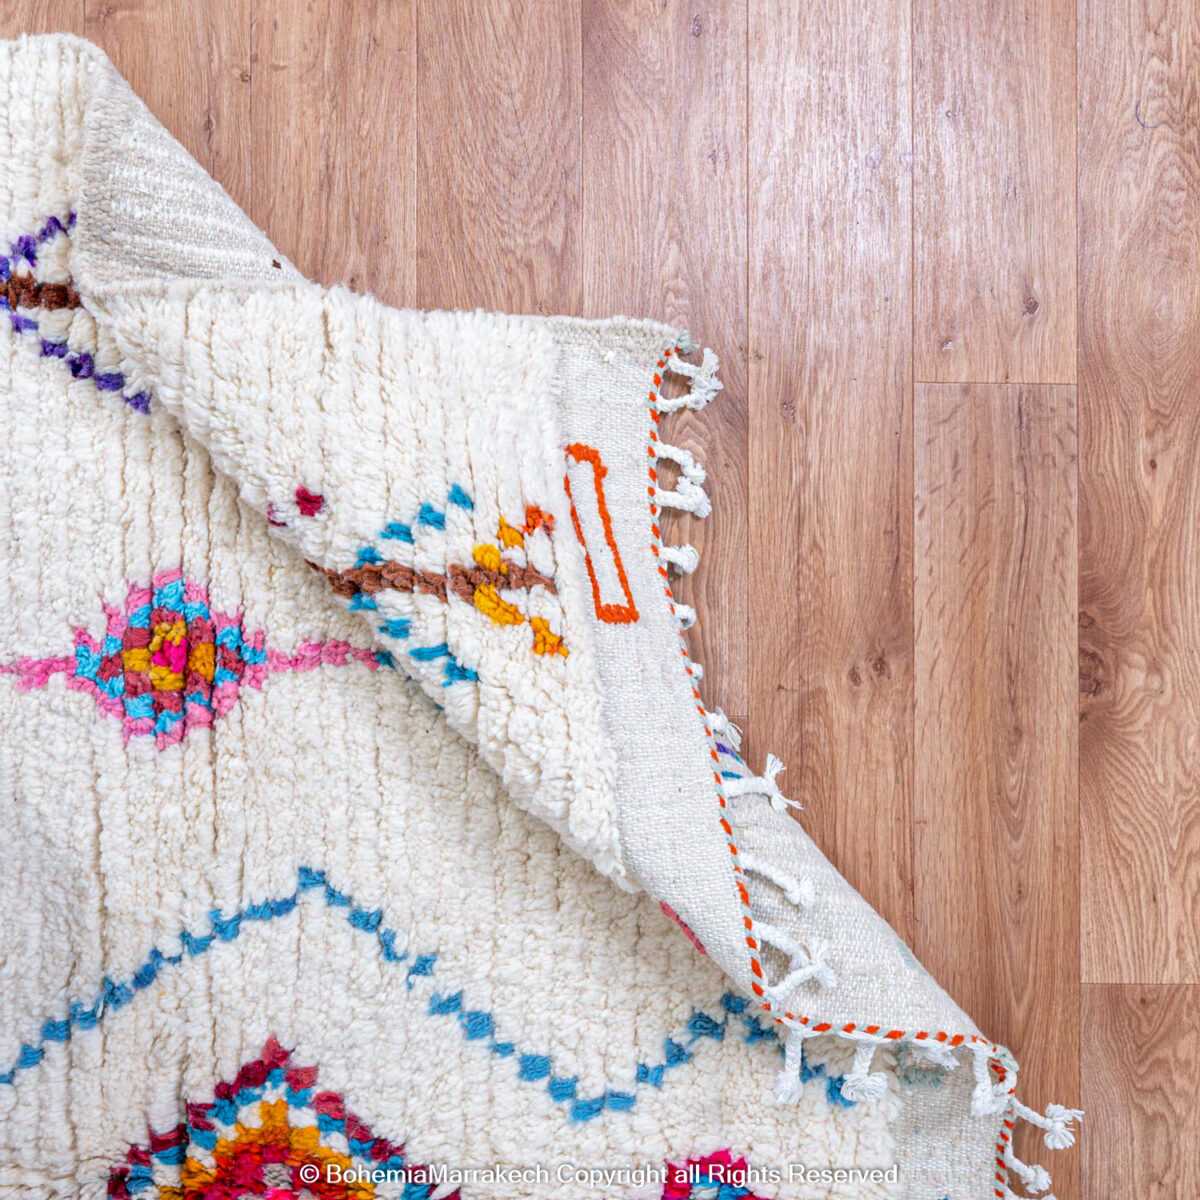 rugs, rugs and rugs, rug rugs, carpet, carpet carpets, berber carpet, berber flooring, rug shops near me, wool rugs, wool for rug, vintage rugs, moroccan rugs, rugs from morocco, rugs kilim, wool carpet, carpet rugs, beni rugs, best rugs, berber rug, unique rugs, rug online, carpets and rugs online, berber carpet rug, beni carpets, carpet rugs online, mats rugs, rugs designs, tribal rugs, handmade rugs, handmade carpet, hand made carpet, carpets mats, luxury rugs, beni ourain rug, hand woven rugs, carpet and rugs, beni ourain carpets, hand woven carpets, carpet manufacturer, rug shops, berber carpet colors, berber carpet colours, berber rug colors, berber area rugs, custom made carpets, shop vintage rugs, berber carpet pricing, wholesale rugs and carpets, vintage rugs for sale, beautiful rugs.